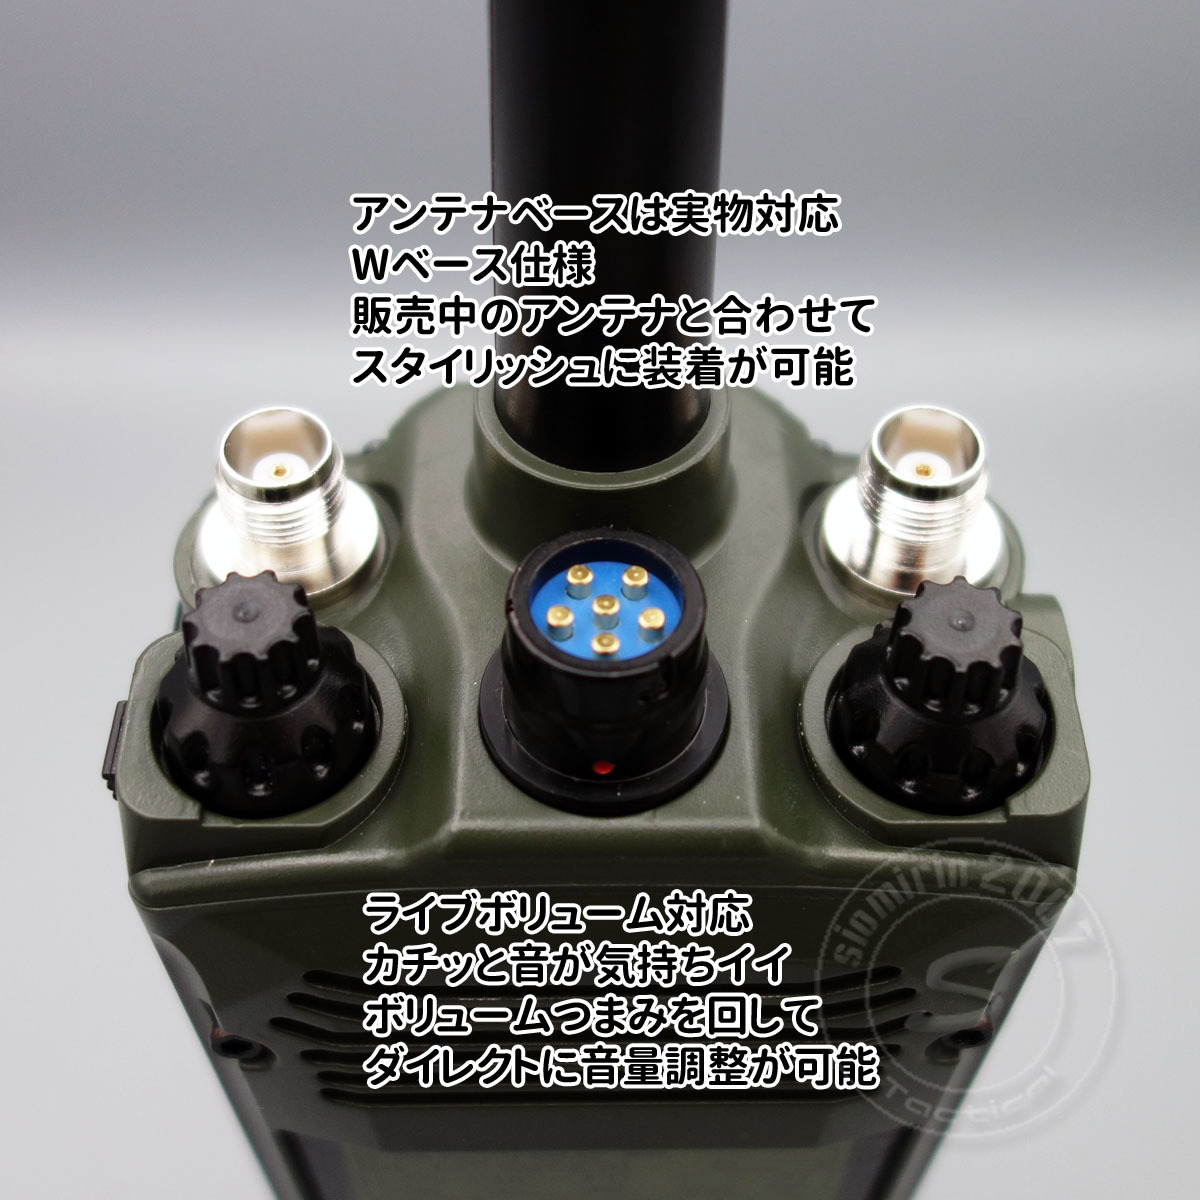 ☆新型 PRC-163 ダミーラジオ 万能モデル 光るタイプ 新回路内蔵 アンプ入り ミリタリーバージョンOK サバゲー_画像4